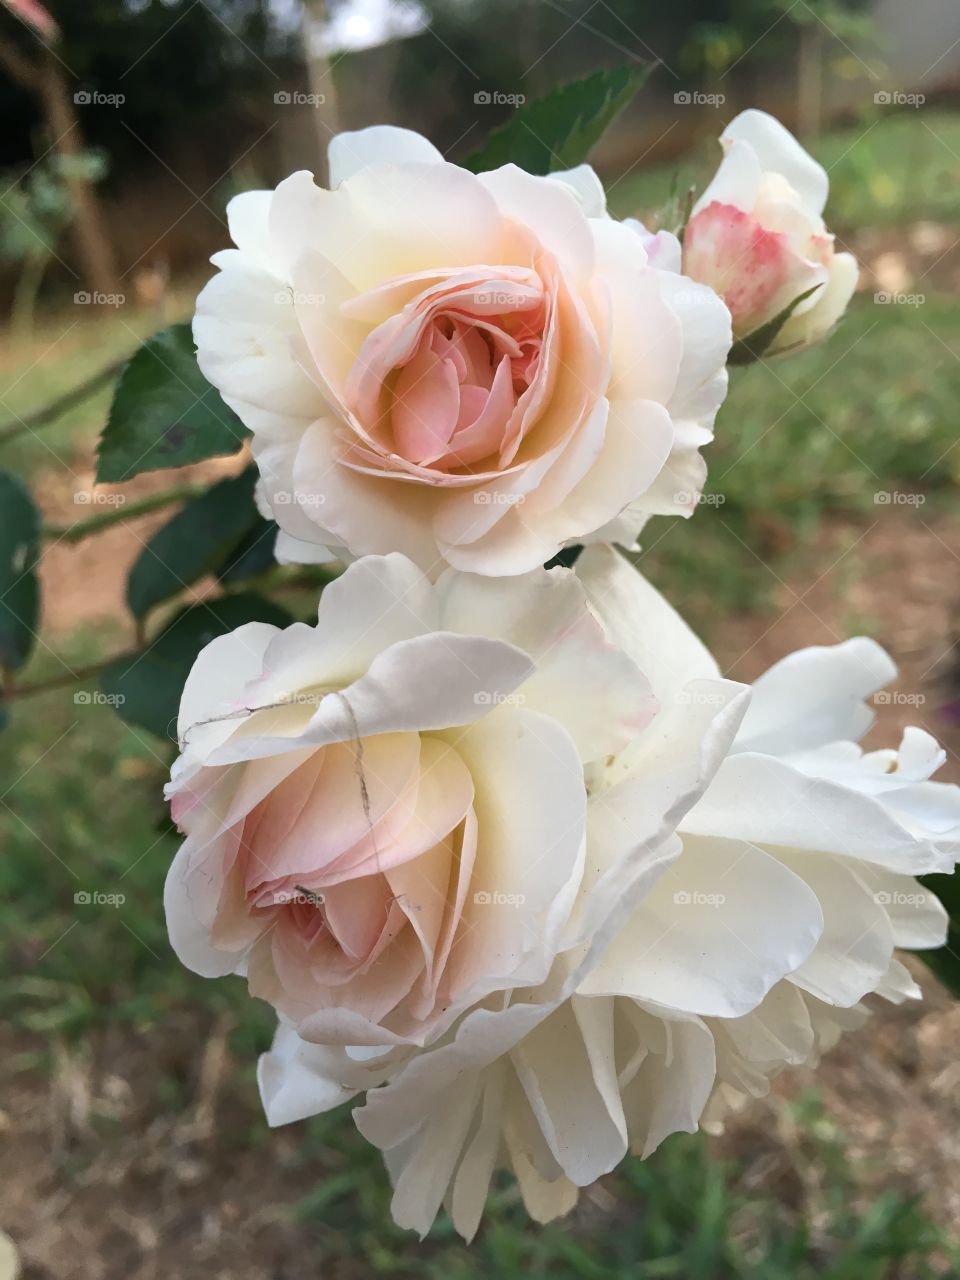 ‪#NoFilter - O #Entardecer com as #flores!‬
‪Aqui: mini-rosas brancas. E de tão alvas, os miolos ficam róseos.‬
‪🌸‬
‪#natureza #paisagem #fotografia ‬